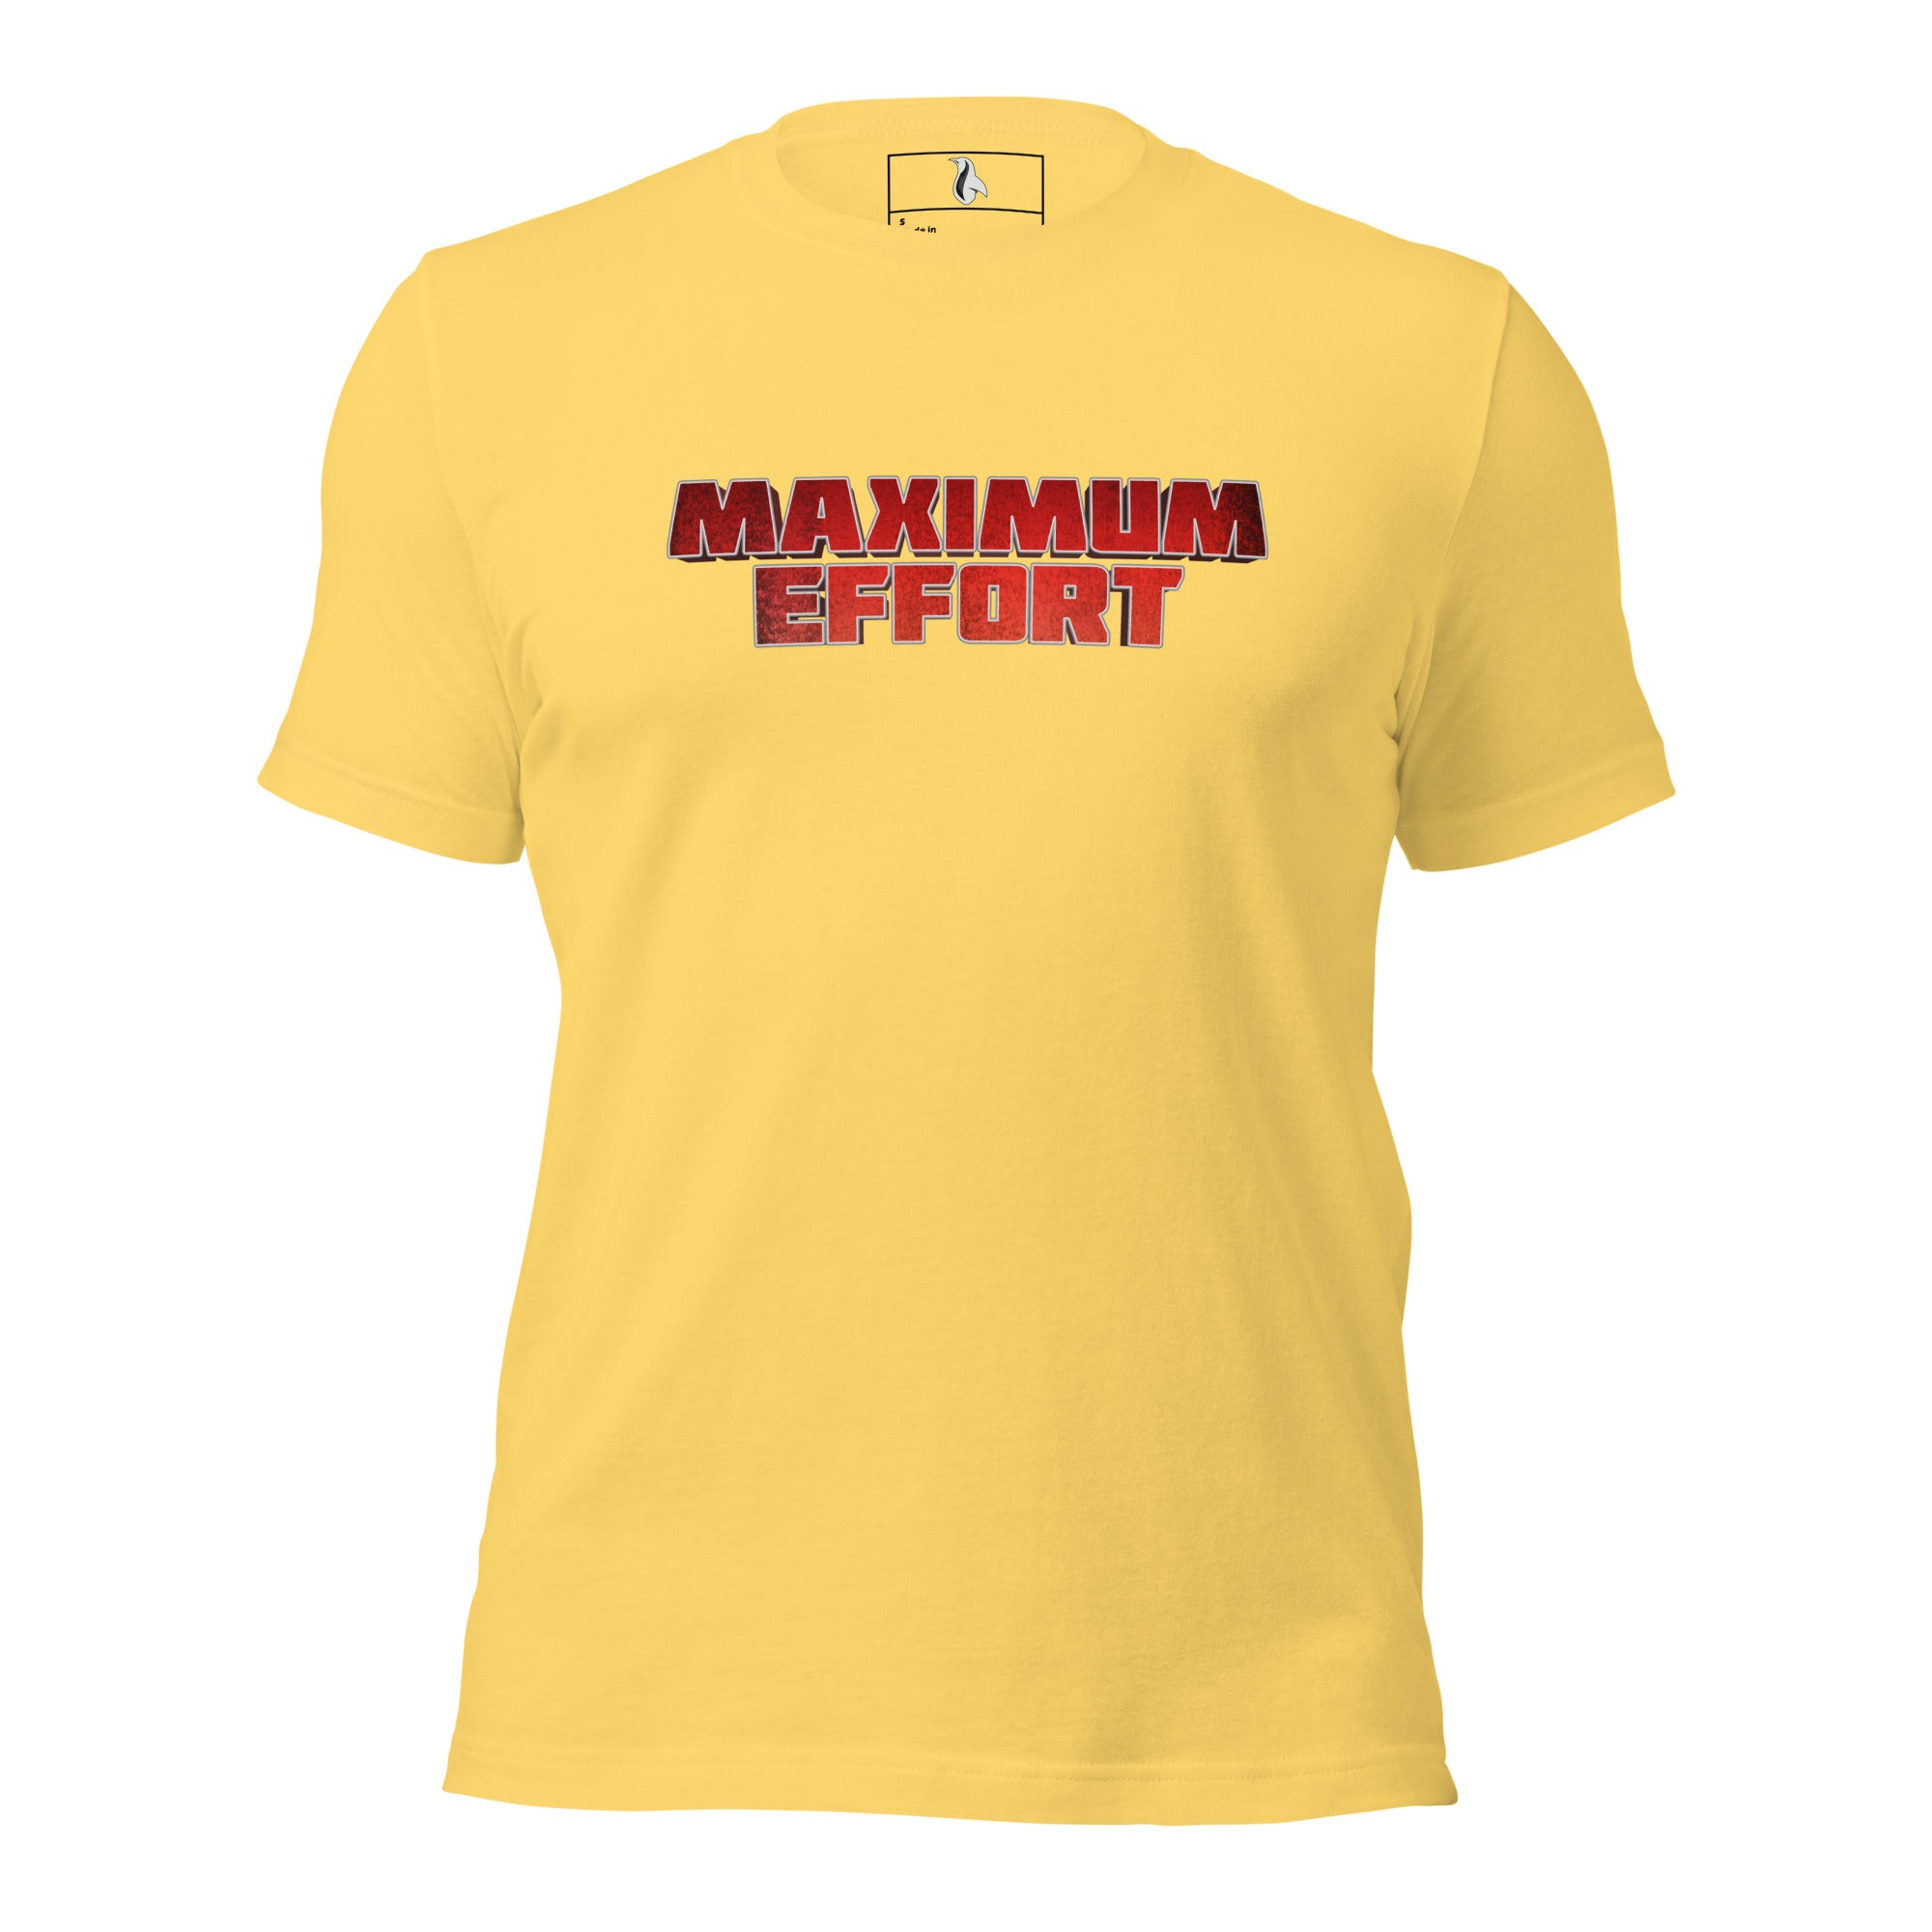 Maximum Effort Unisex t-shirt